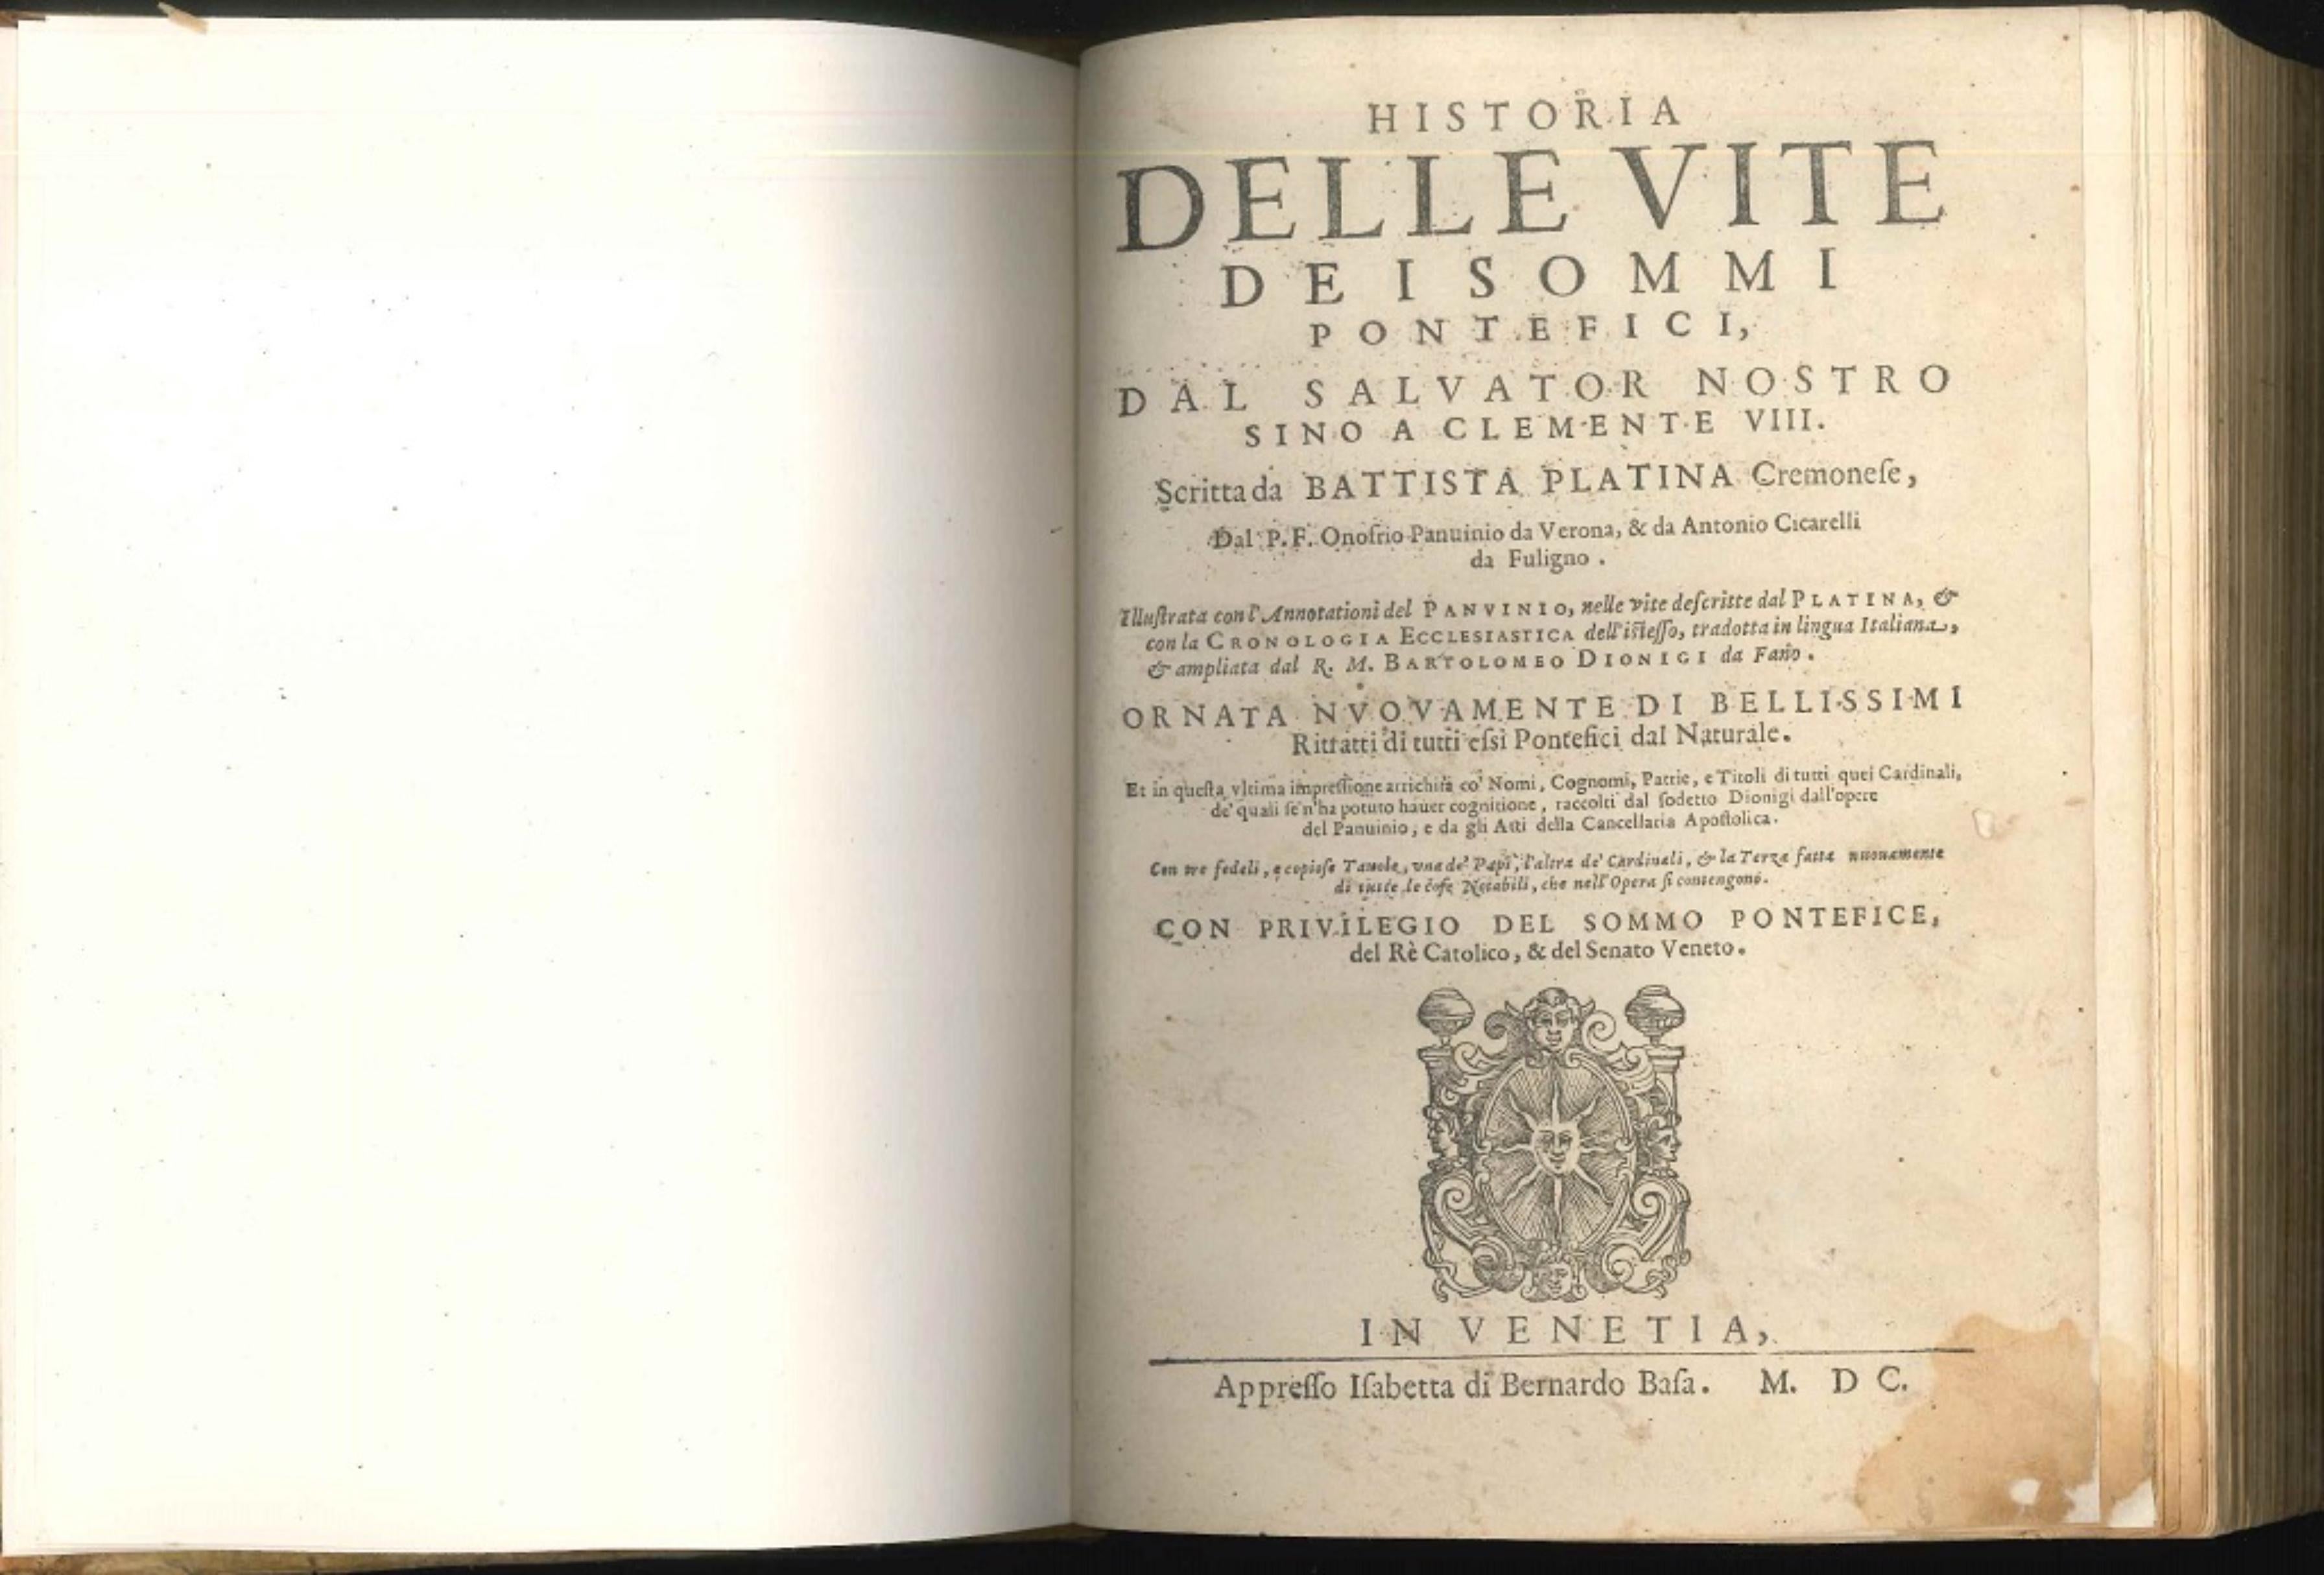 Historia delle vite dei sommi pontefici - Original Rare Book - 1600 - Art by Unknown